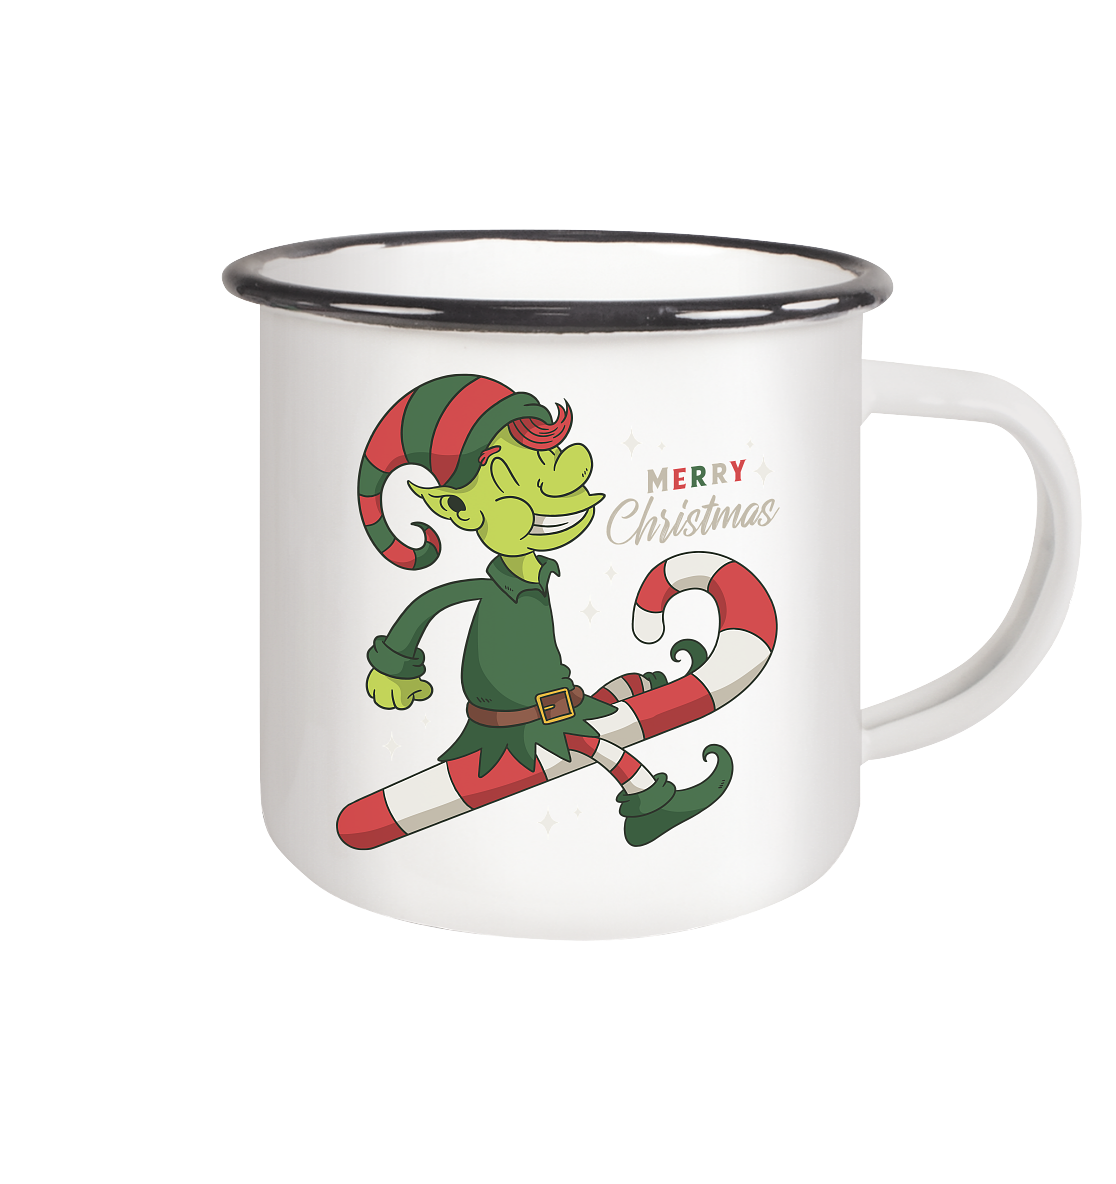 Christmas Design Cute Christmas Elf with Candy Cane Merry Christmas - Enamel Mug (Black)